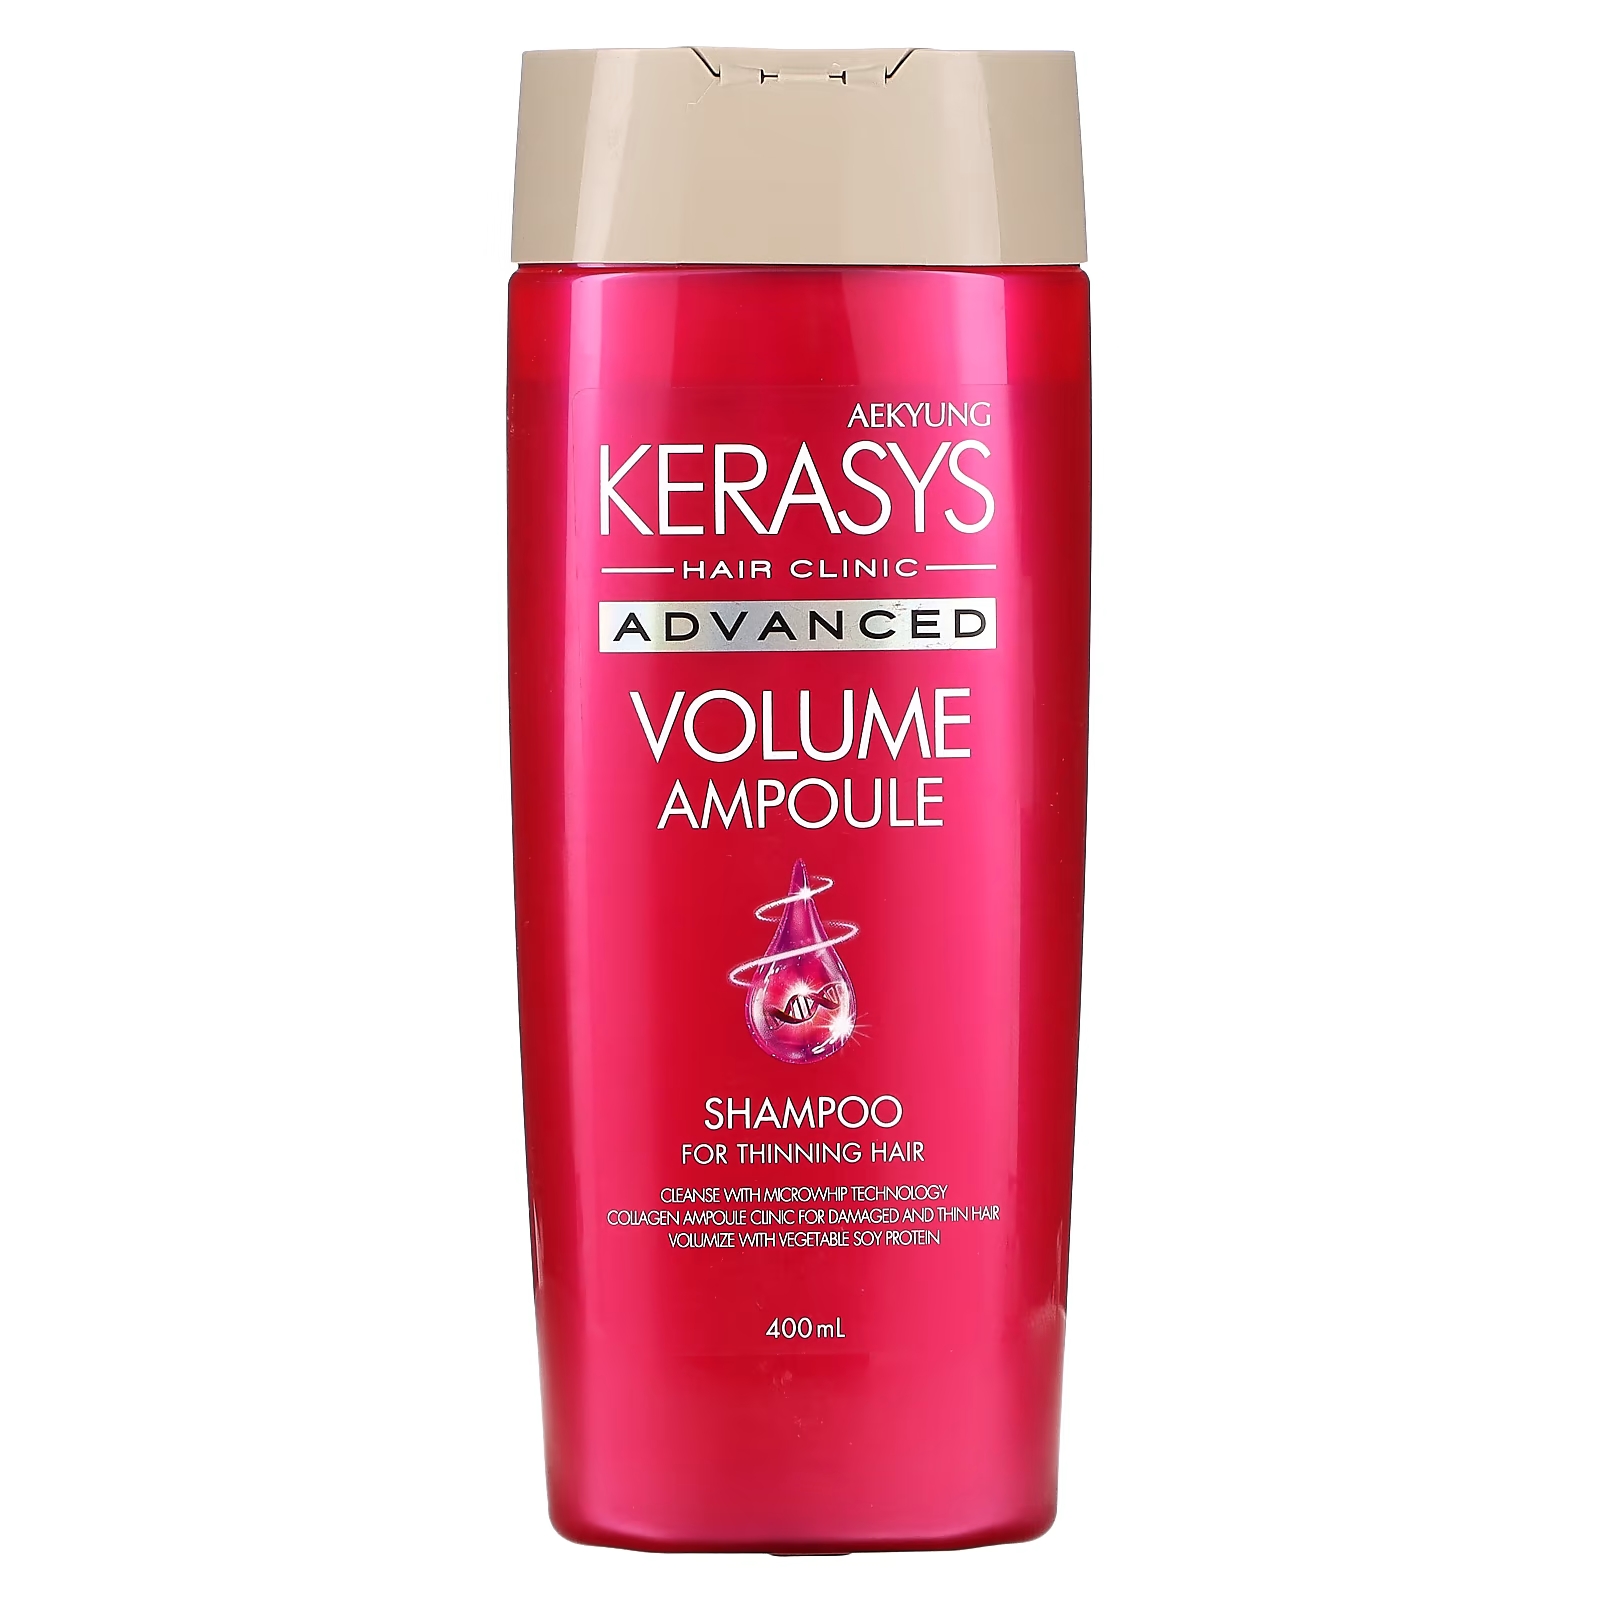 Шампунь Kerasys Advanced Volume Ampoule для редеющих волос, 400 мл norigami яичные обертки с соевым протеином мак 10 тонких оберток 40 г 1 4 унции